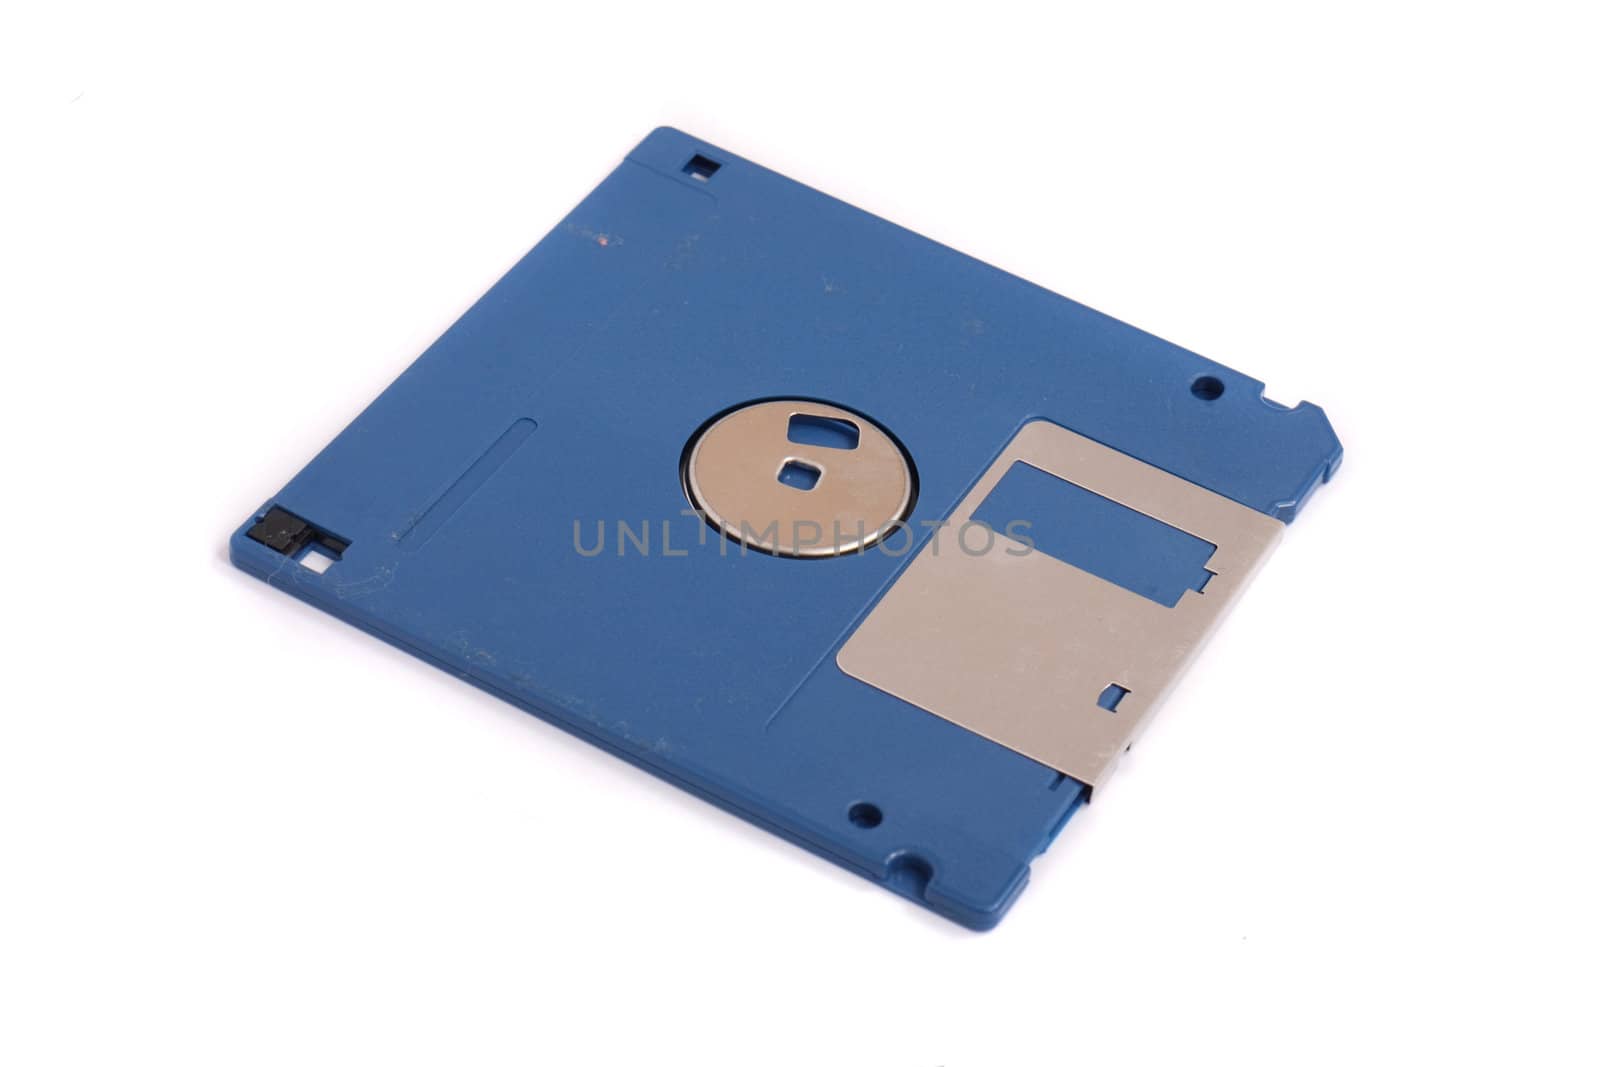 floppy disk by jonnysek